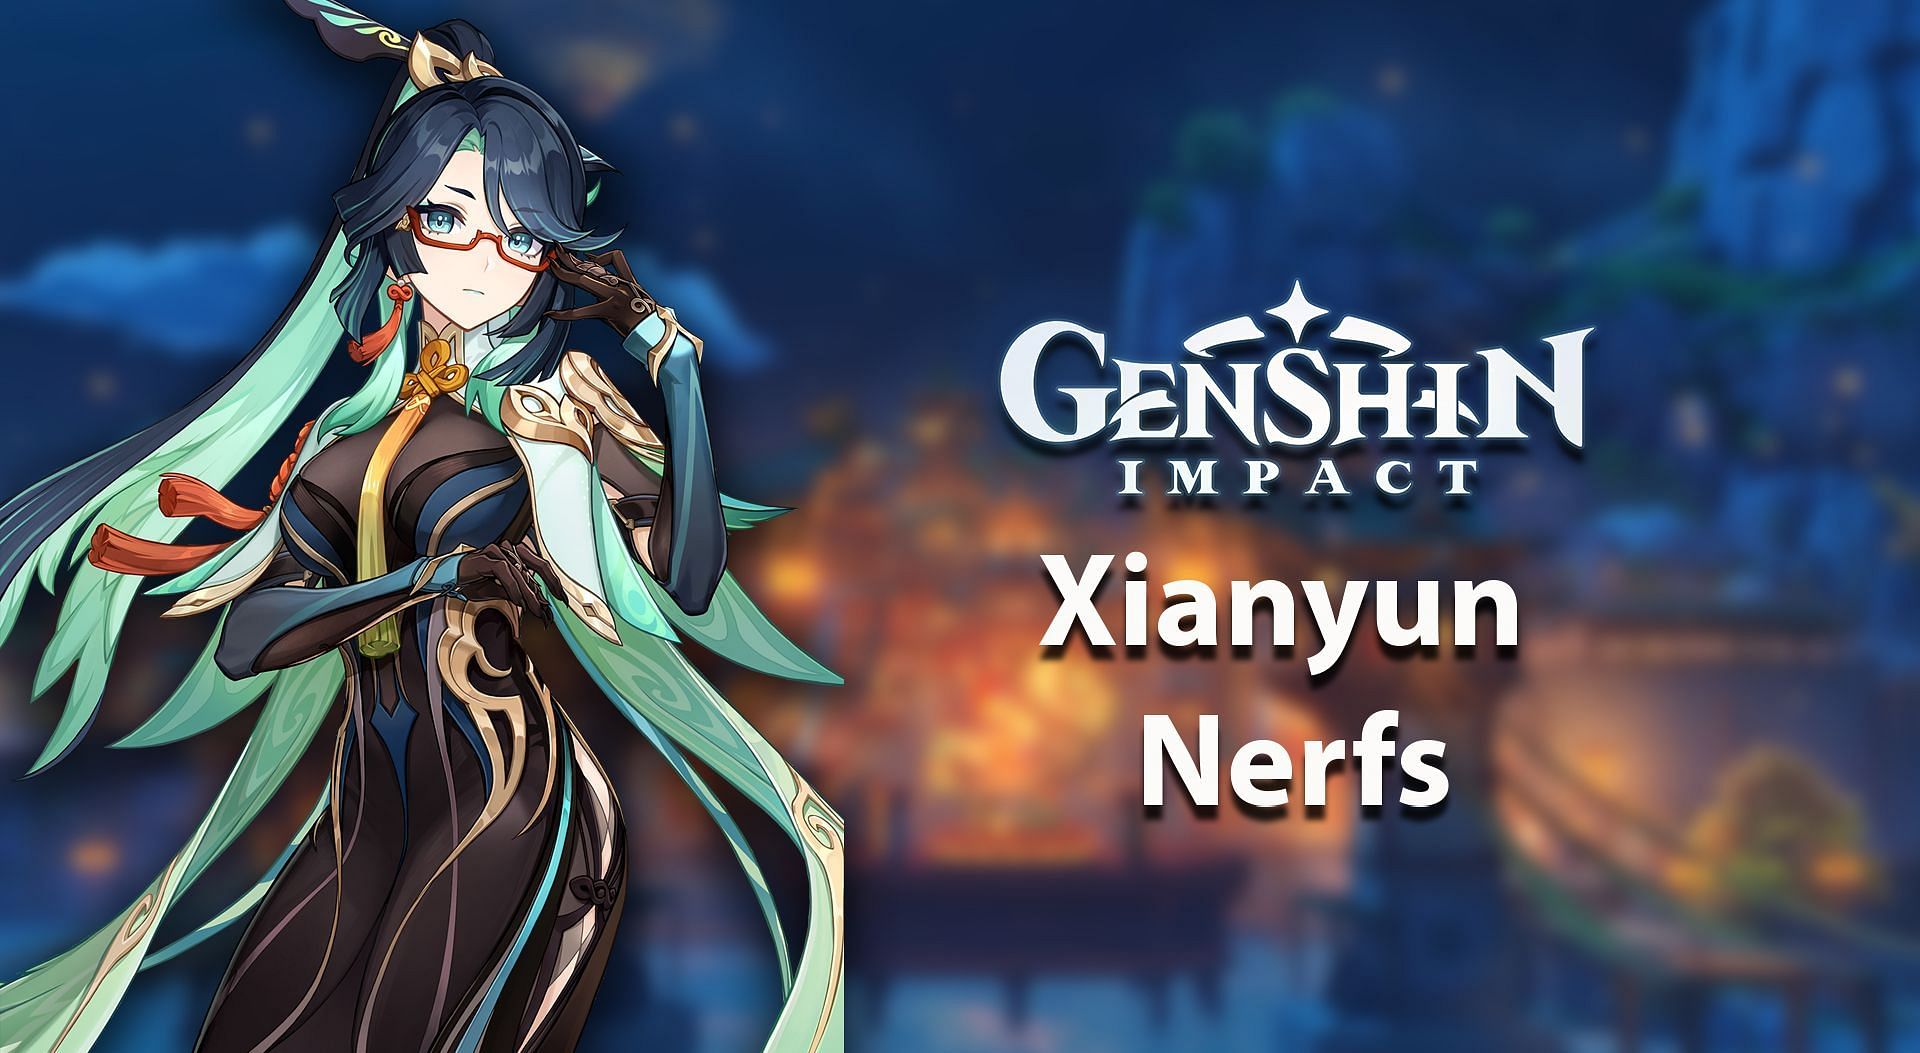 Genshin Impact Xianyun nerfs